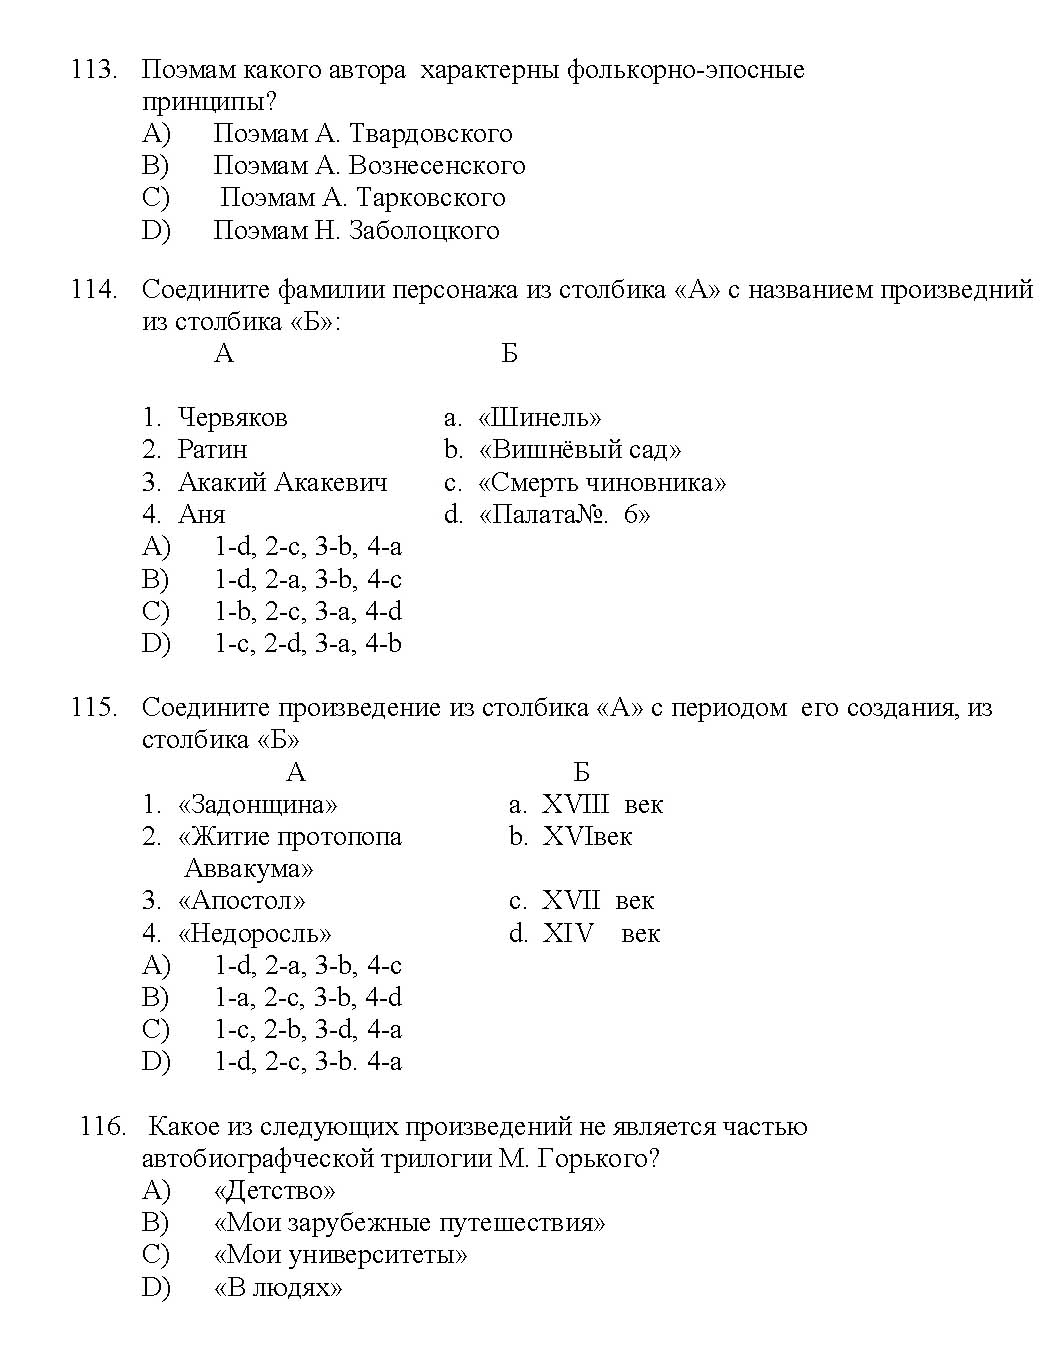 Kerala SET Russian Exam 2017 Question Code 17227 A 19